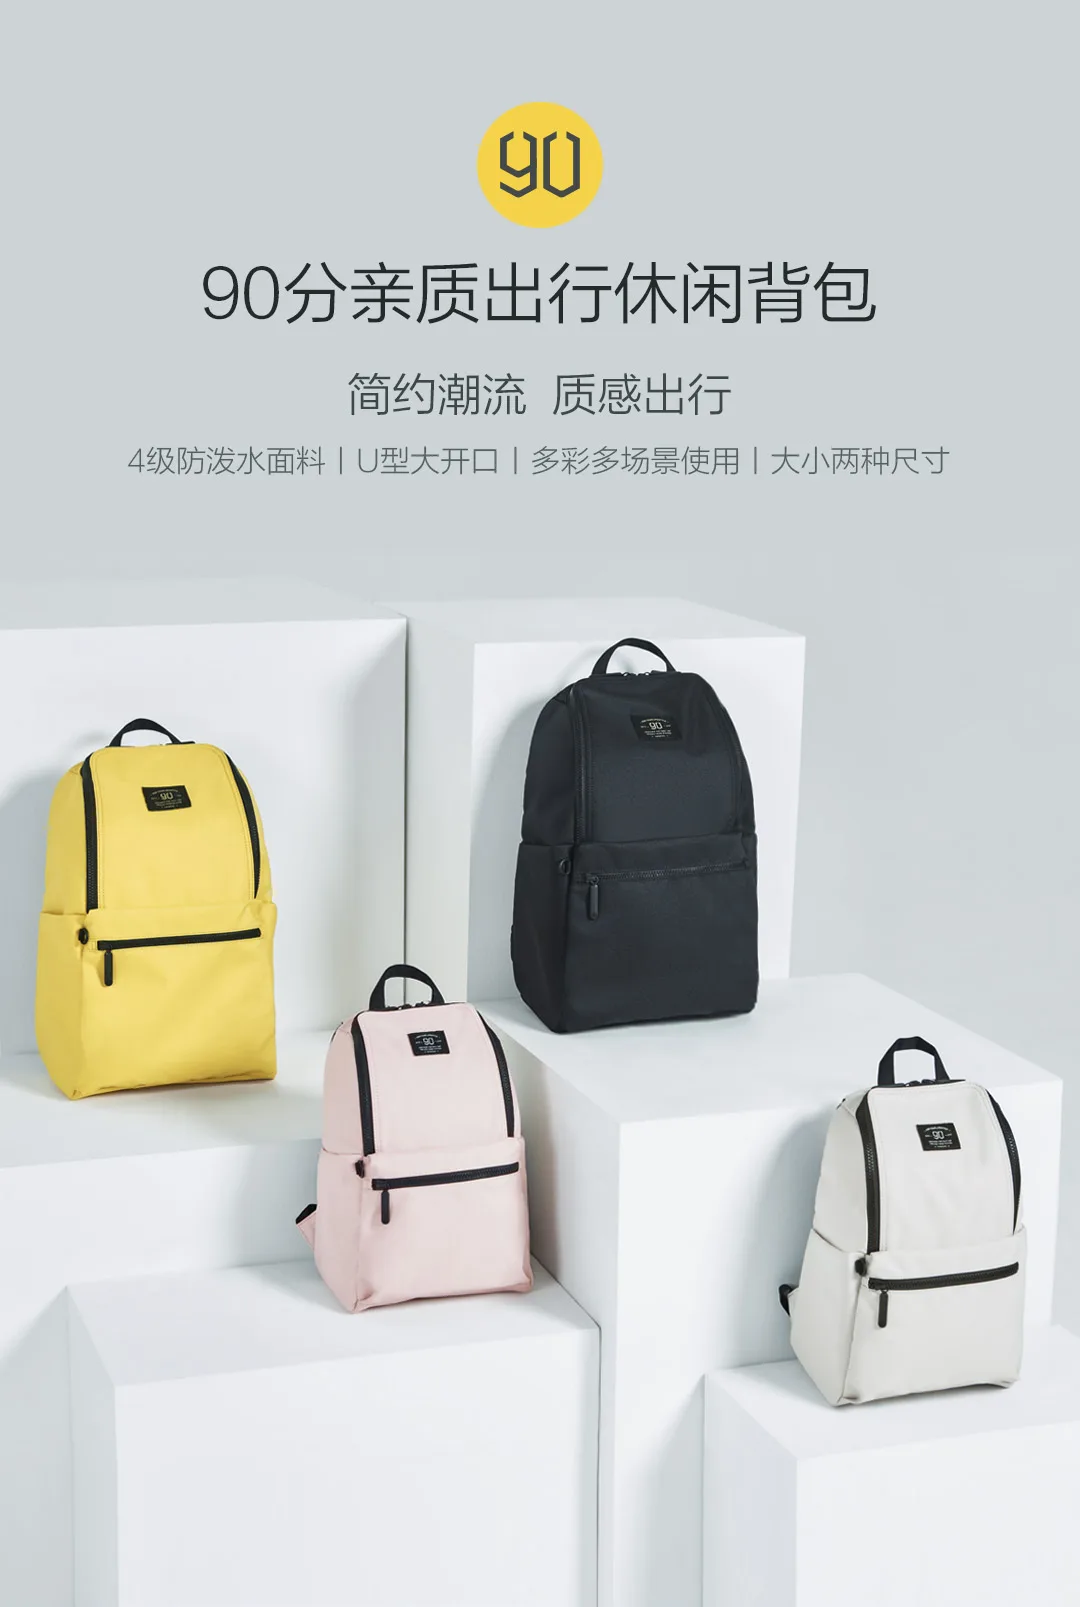 Рюкзак для путешествий Xiaomi Youpin 90 point pro 4 класса водоотталкивающий многоцветный дополнительный u-образный большой открывающийся